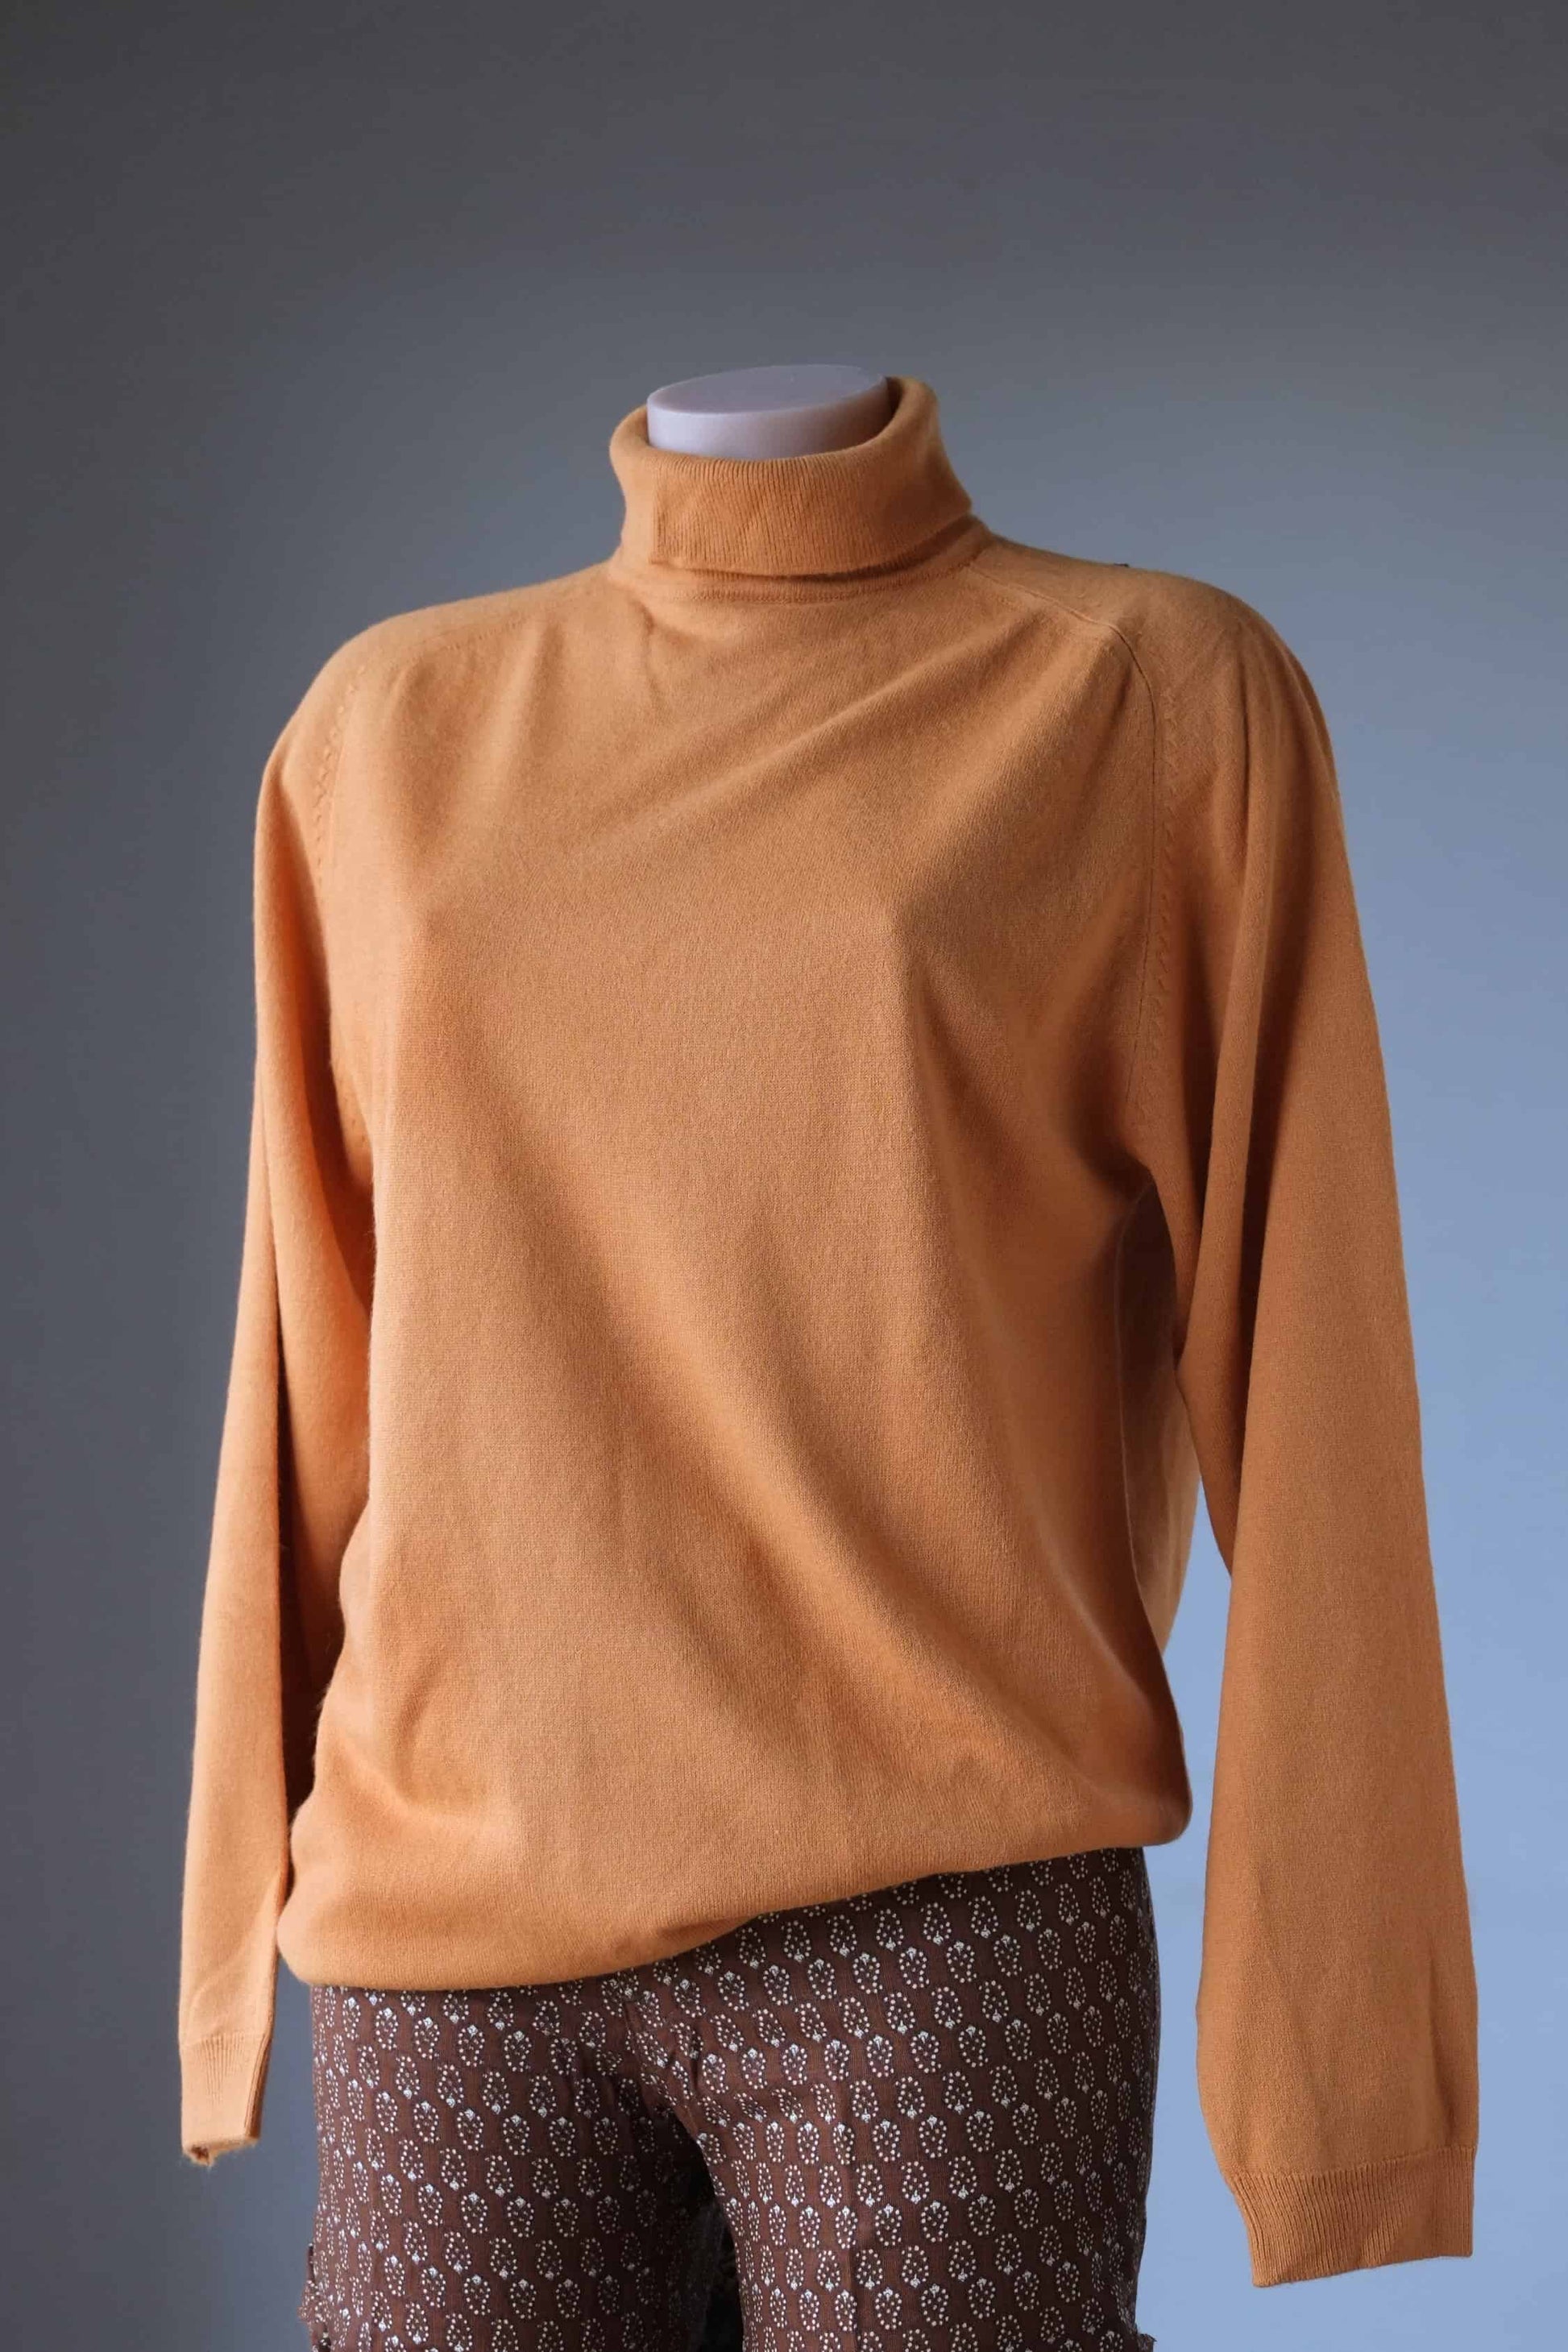 Vintage 70's Rollneck Sweater on mannequin